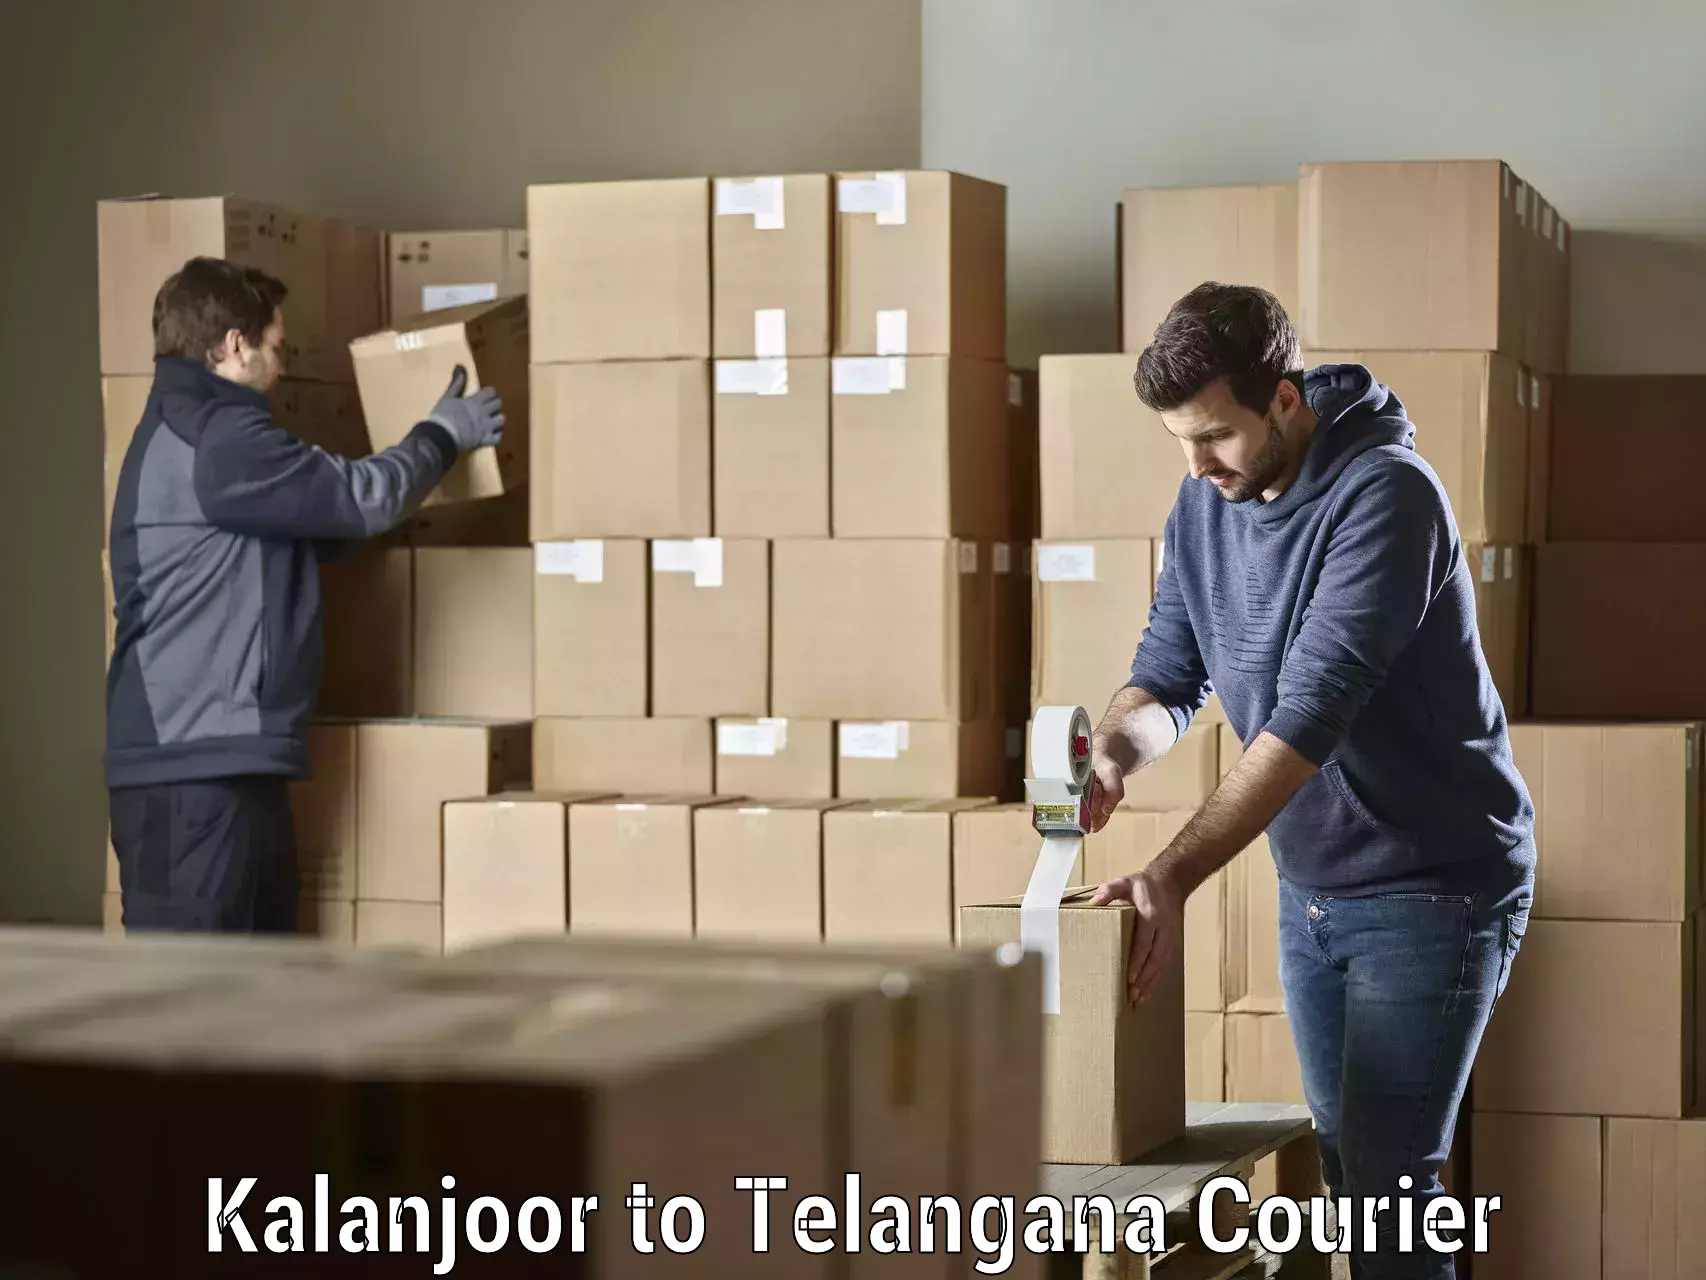 Tech-enabled shipping Kalanjoor to Alair